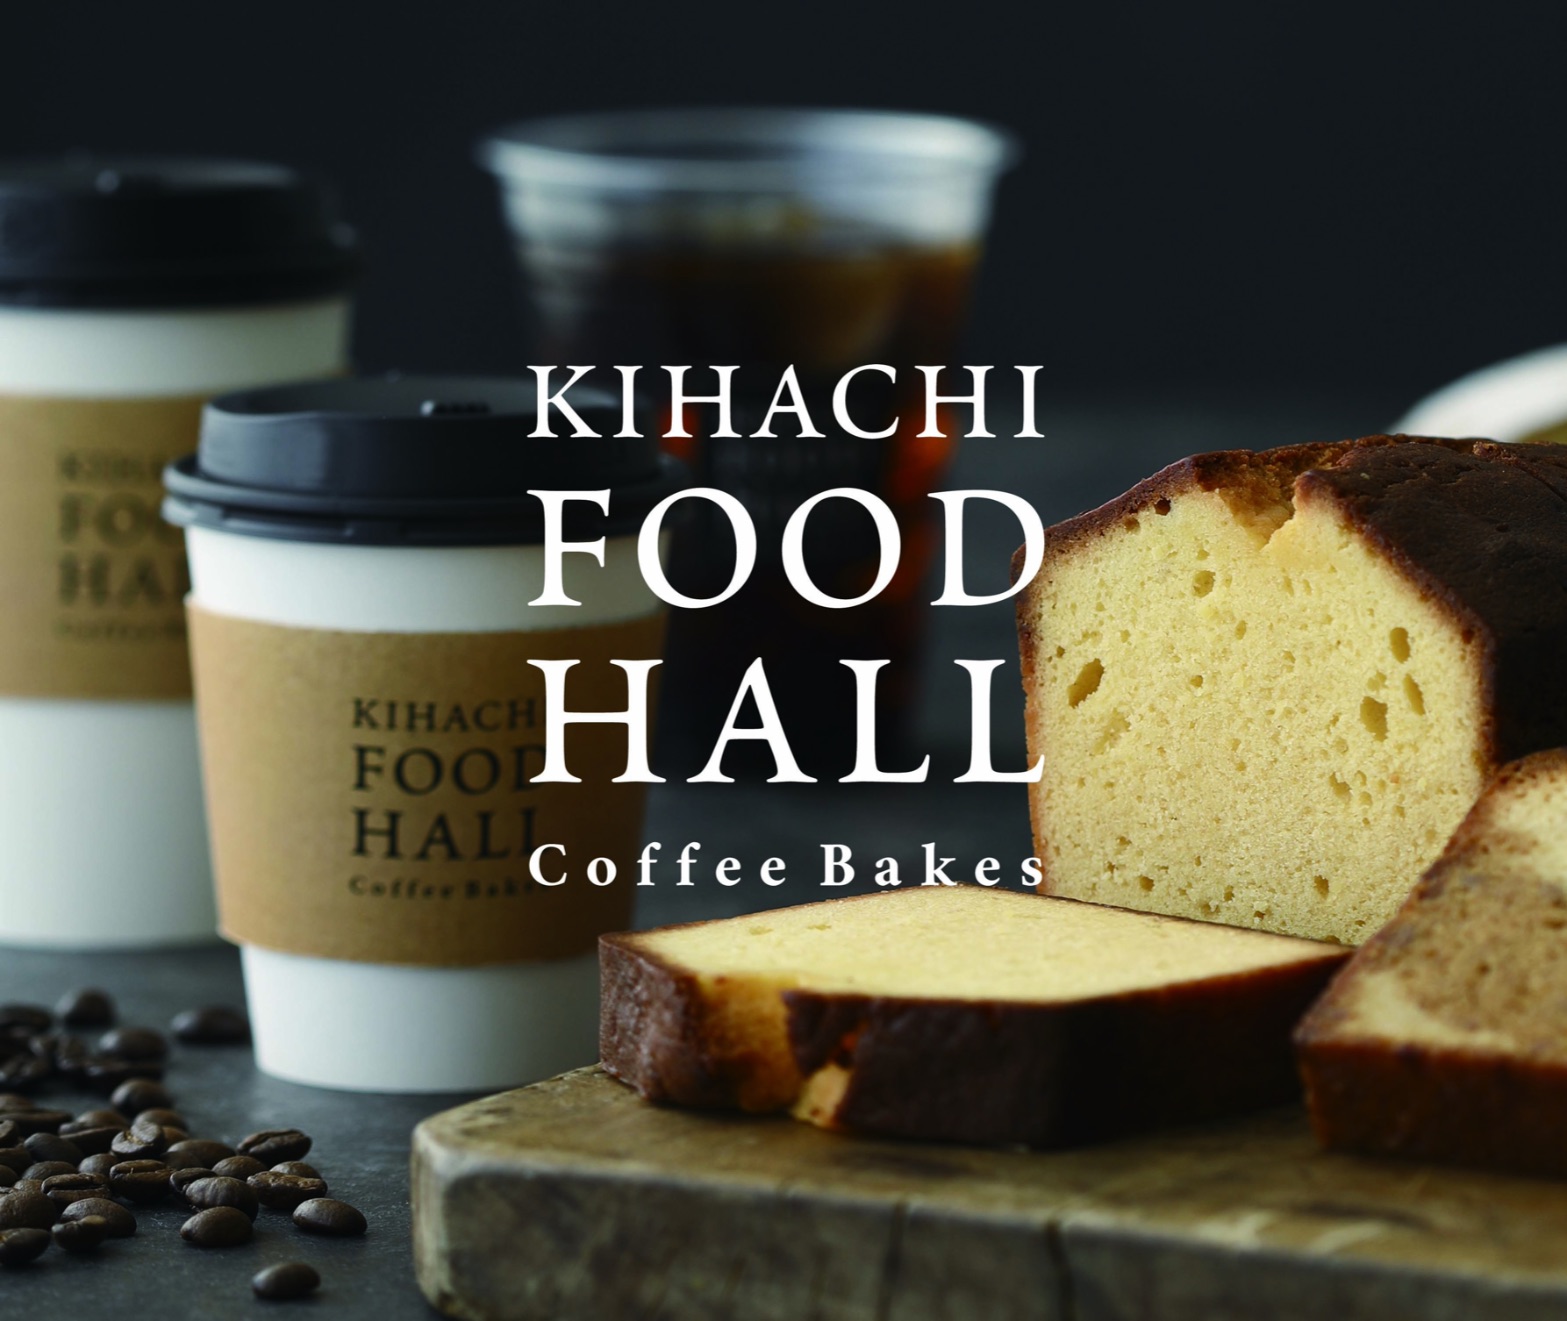 kihachi-food-hall-%e3%82%ad%e3%83%8f%e3%83%81%e3%83%96%e3%83%a9%e3%83%b3%e3%83%89-%e5%92%96%e5%95%a1%e6%96%b0%e5%ae%bf-2-2